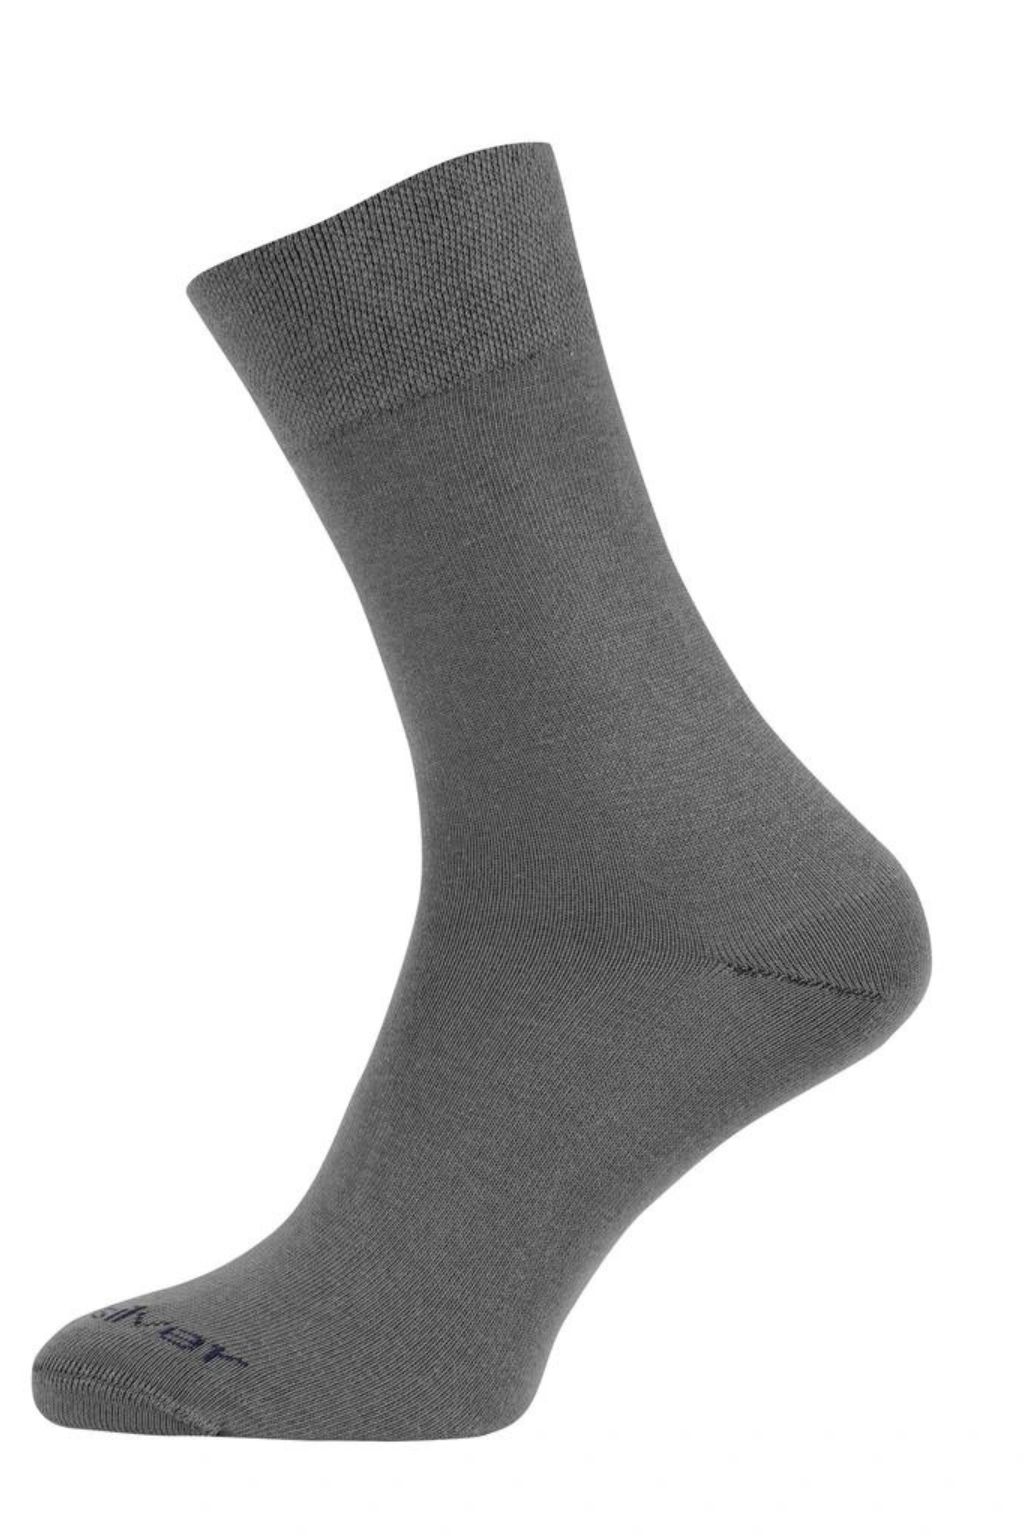 Levně nanosilver® Společenské ponožky se stříbrem nanosilver NEW šedé Velikost: M 39/42